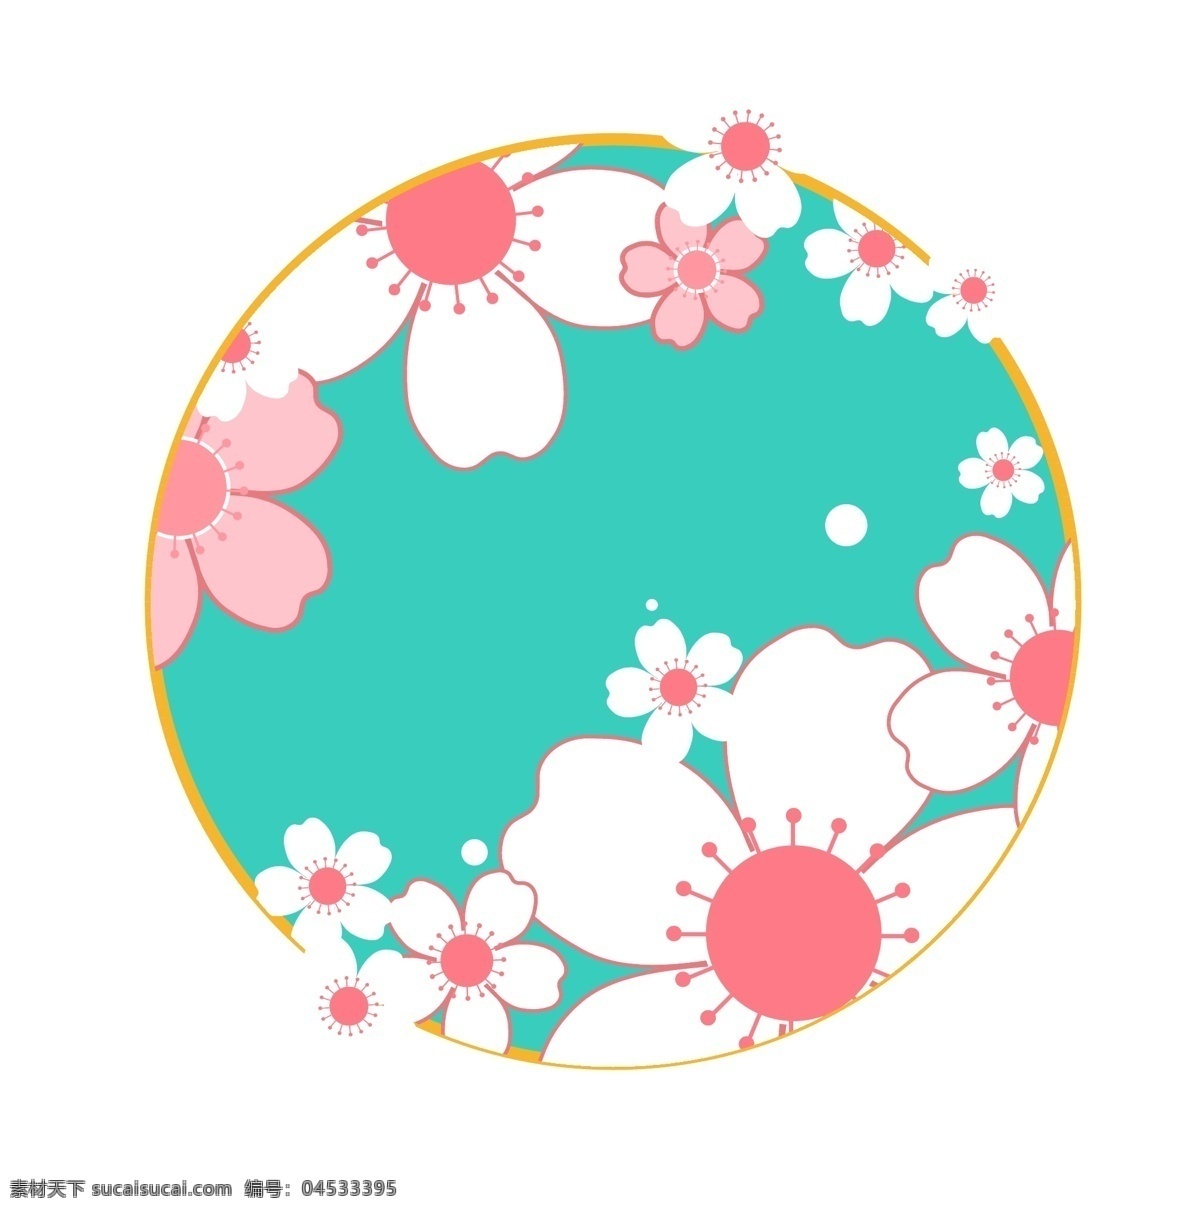 樱花 多多 装饰 图案 圆形 花 樱 花瓣 矢量 日本 花卉 矢量樱花 花朵 山 和风 浪漫 彩色 粉色 层次